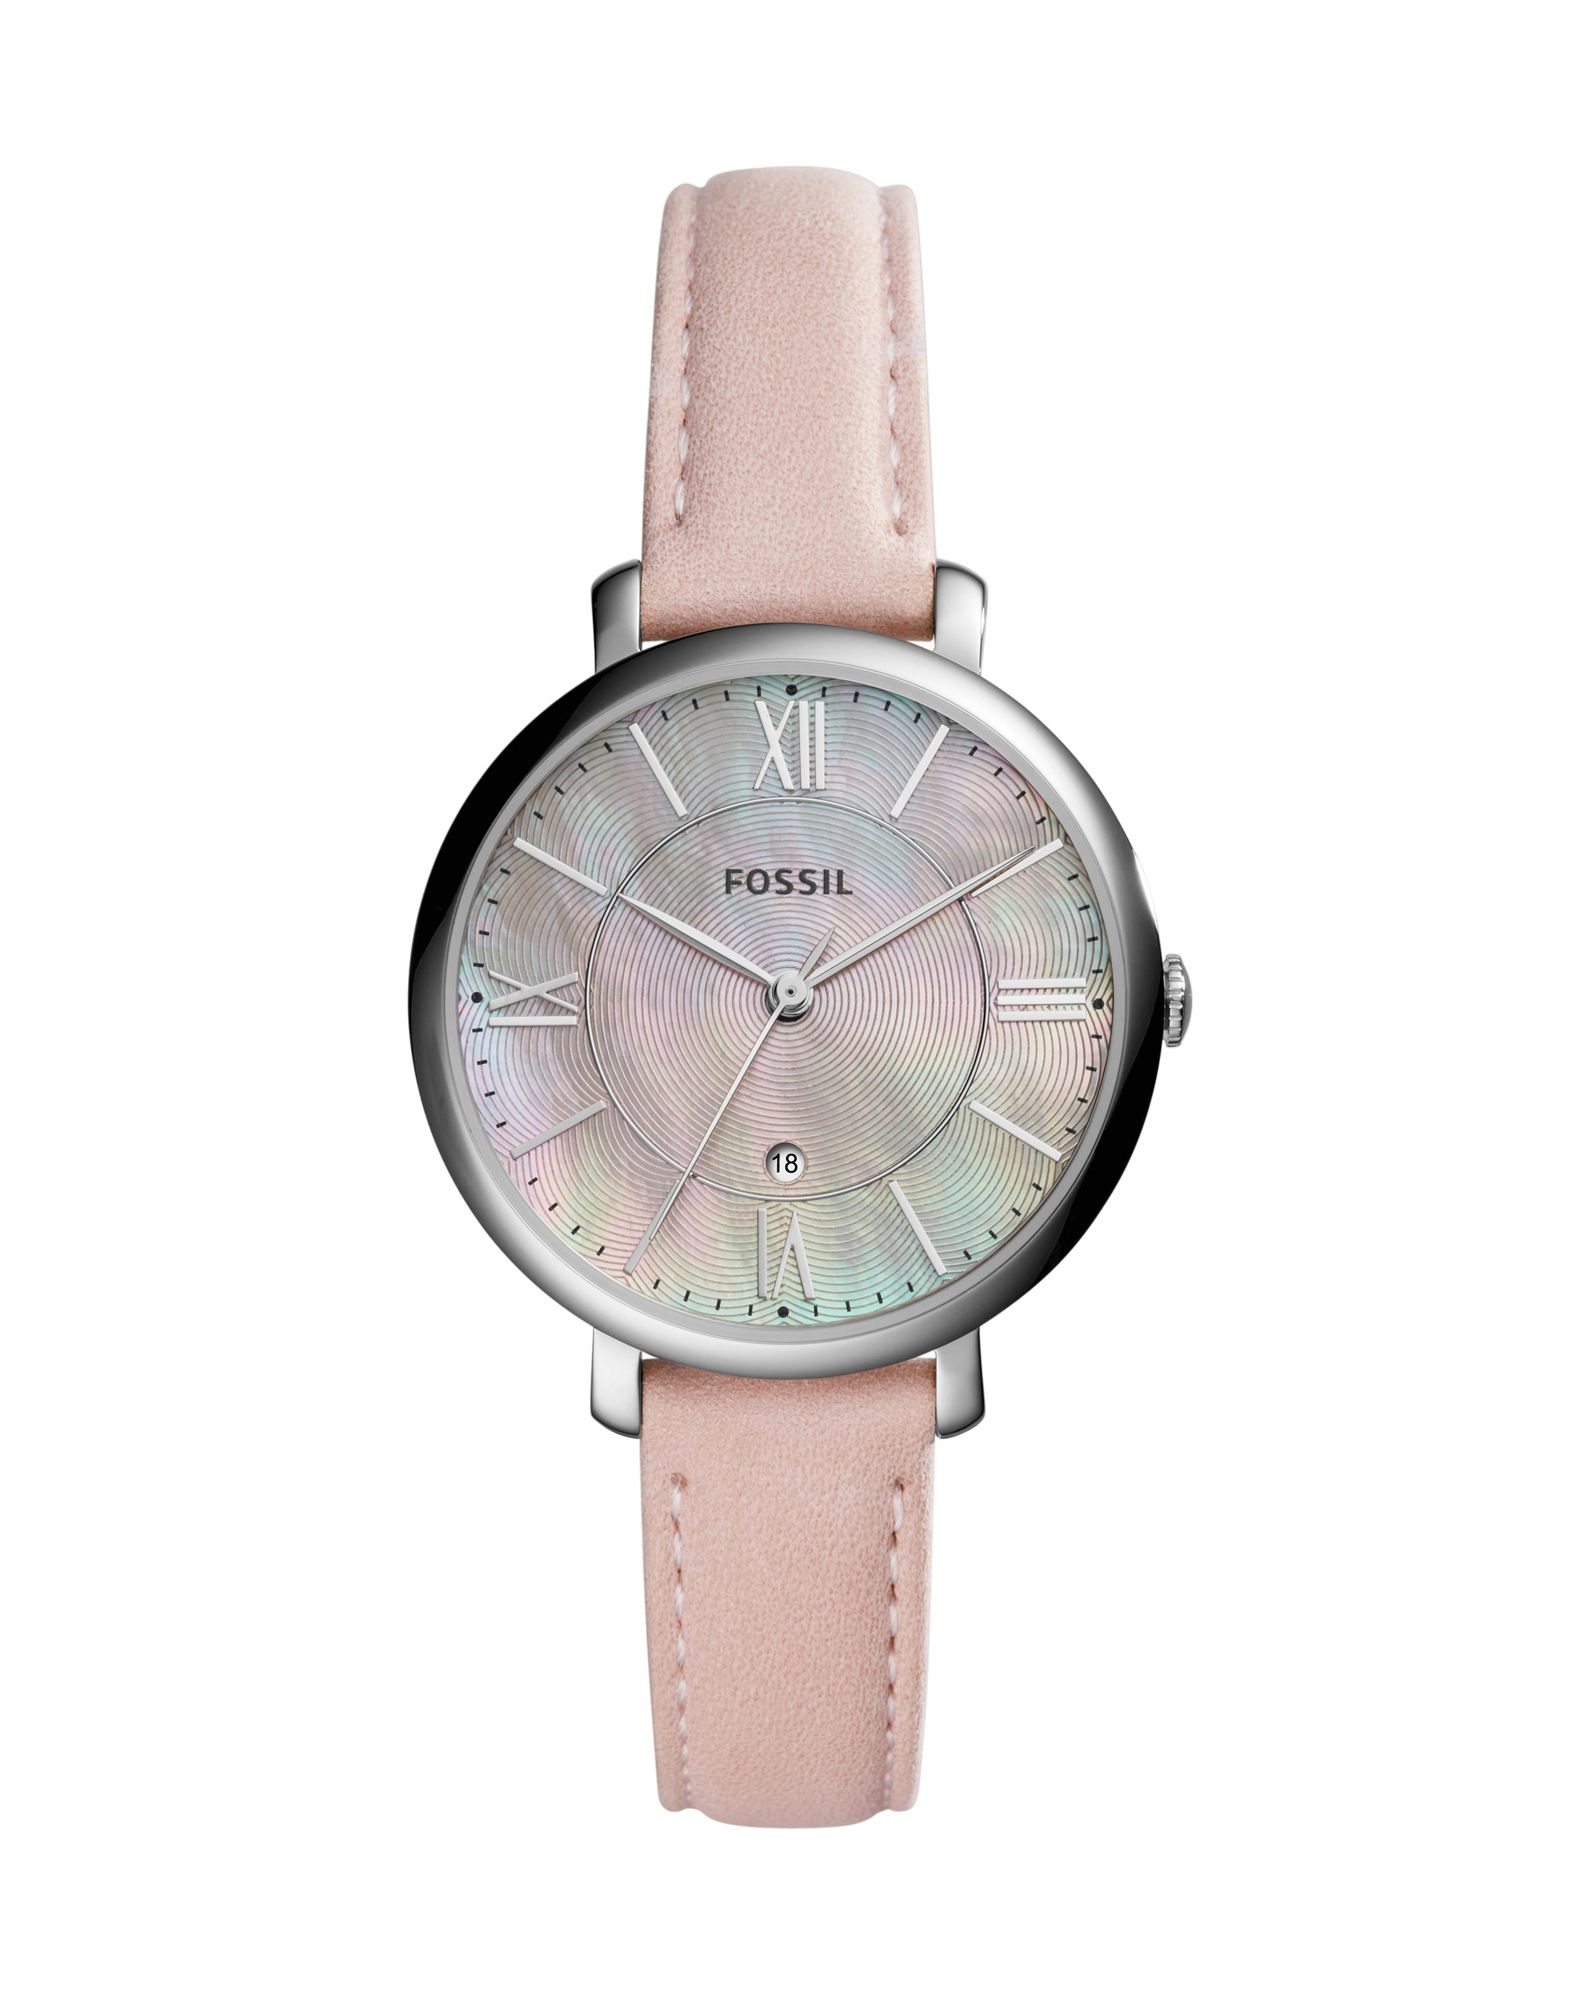 《送料無料》FOSSIL レディース 腕時計 ライトピンク ステンレススチール / 革 JACQUELINE